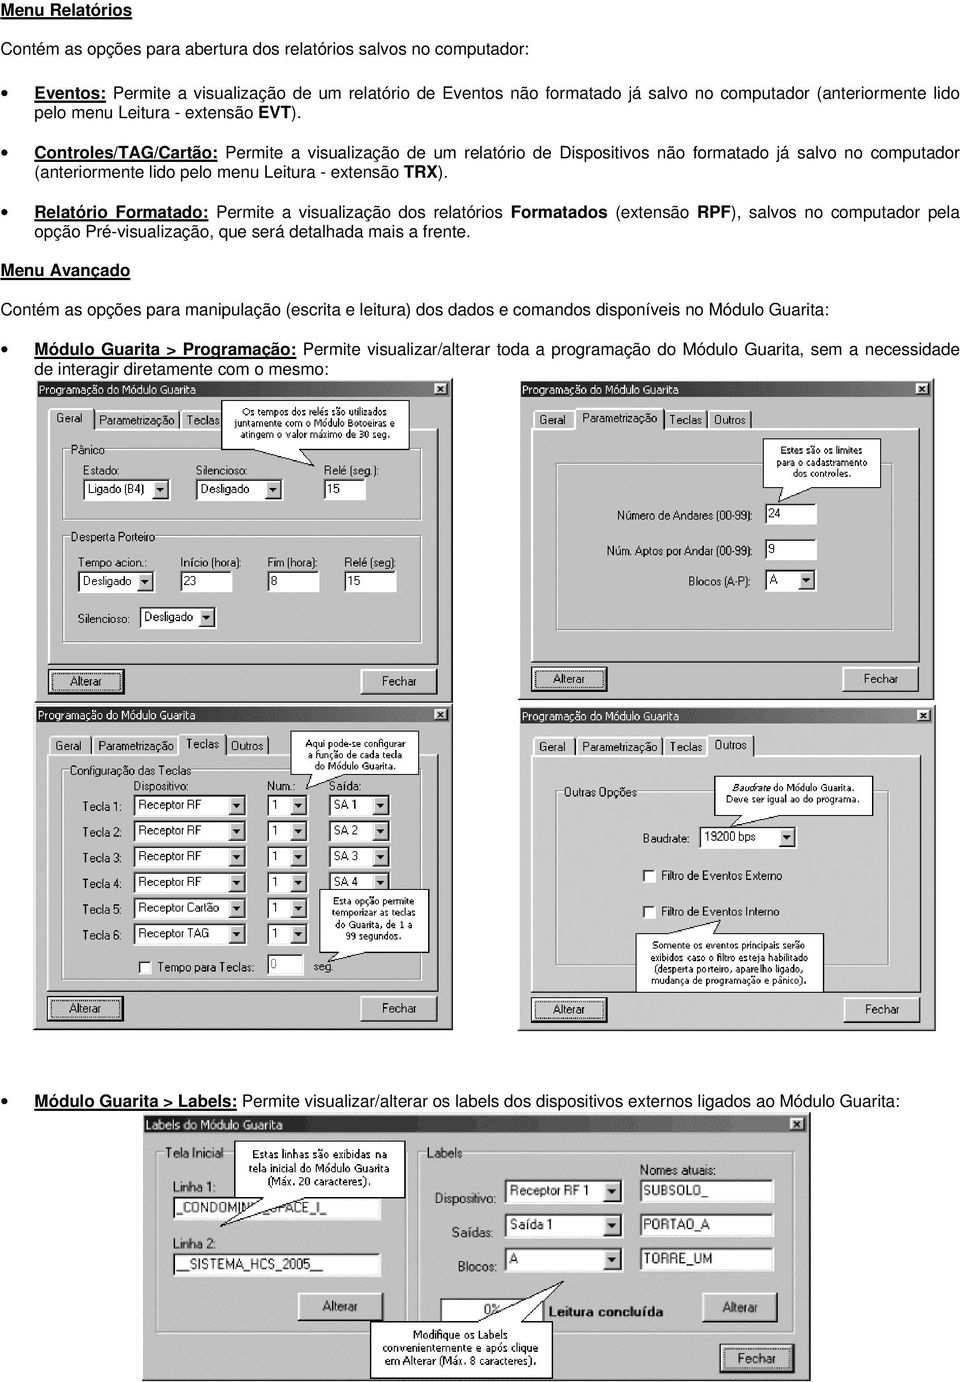 Controles/TAG/Cartão: Permite a visualização de um relatório de Dispositivos não formatado já salvo no computador (anteriormente lido pelo menu Leitura - extensão TRX).